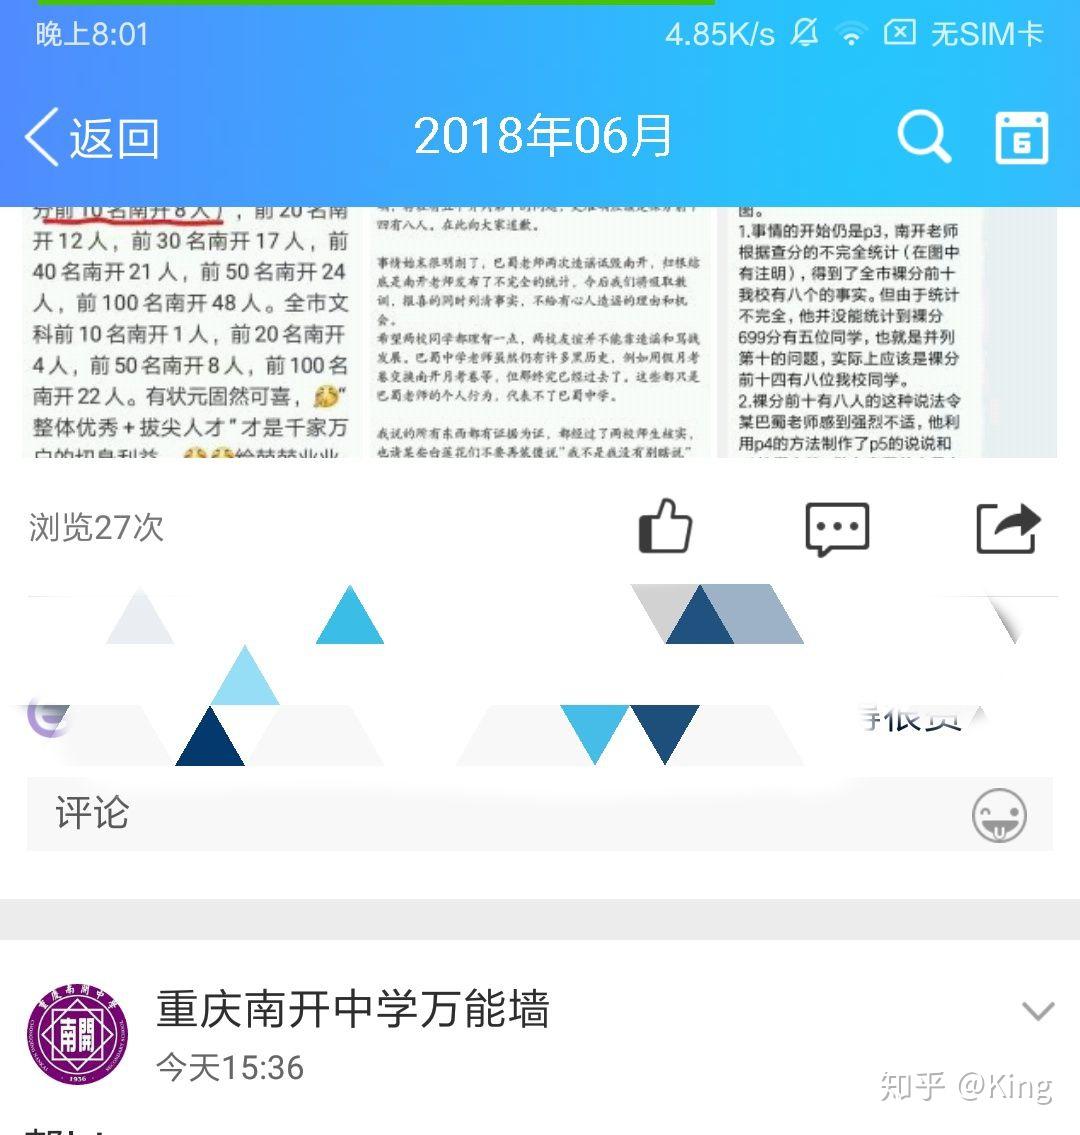 如何评价重庆巴蜀中学老师造谣诬陷重庆南开中